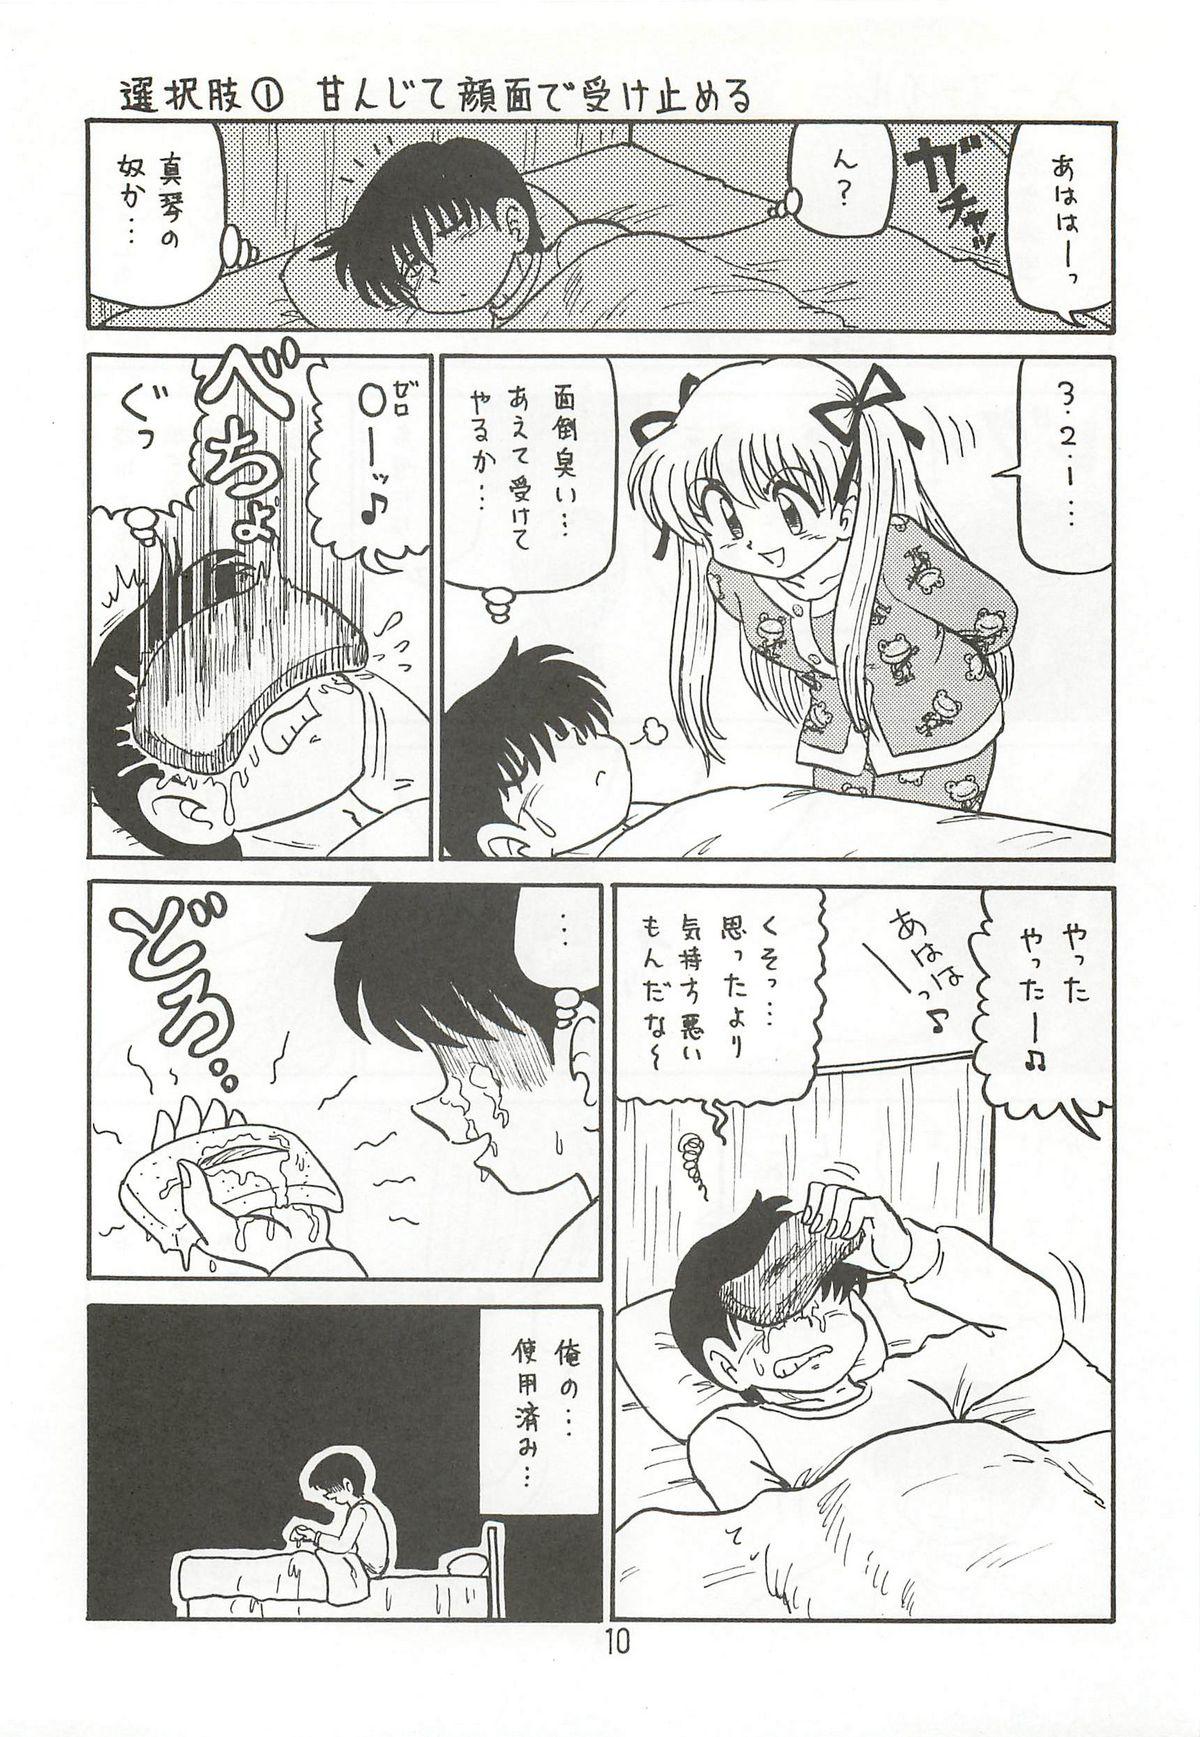 Gang Bang Ayu to Makoto zoukyoukaiteiban - Kanon Money - Page 9